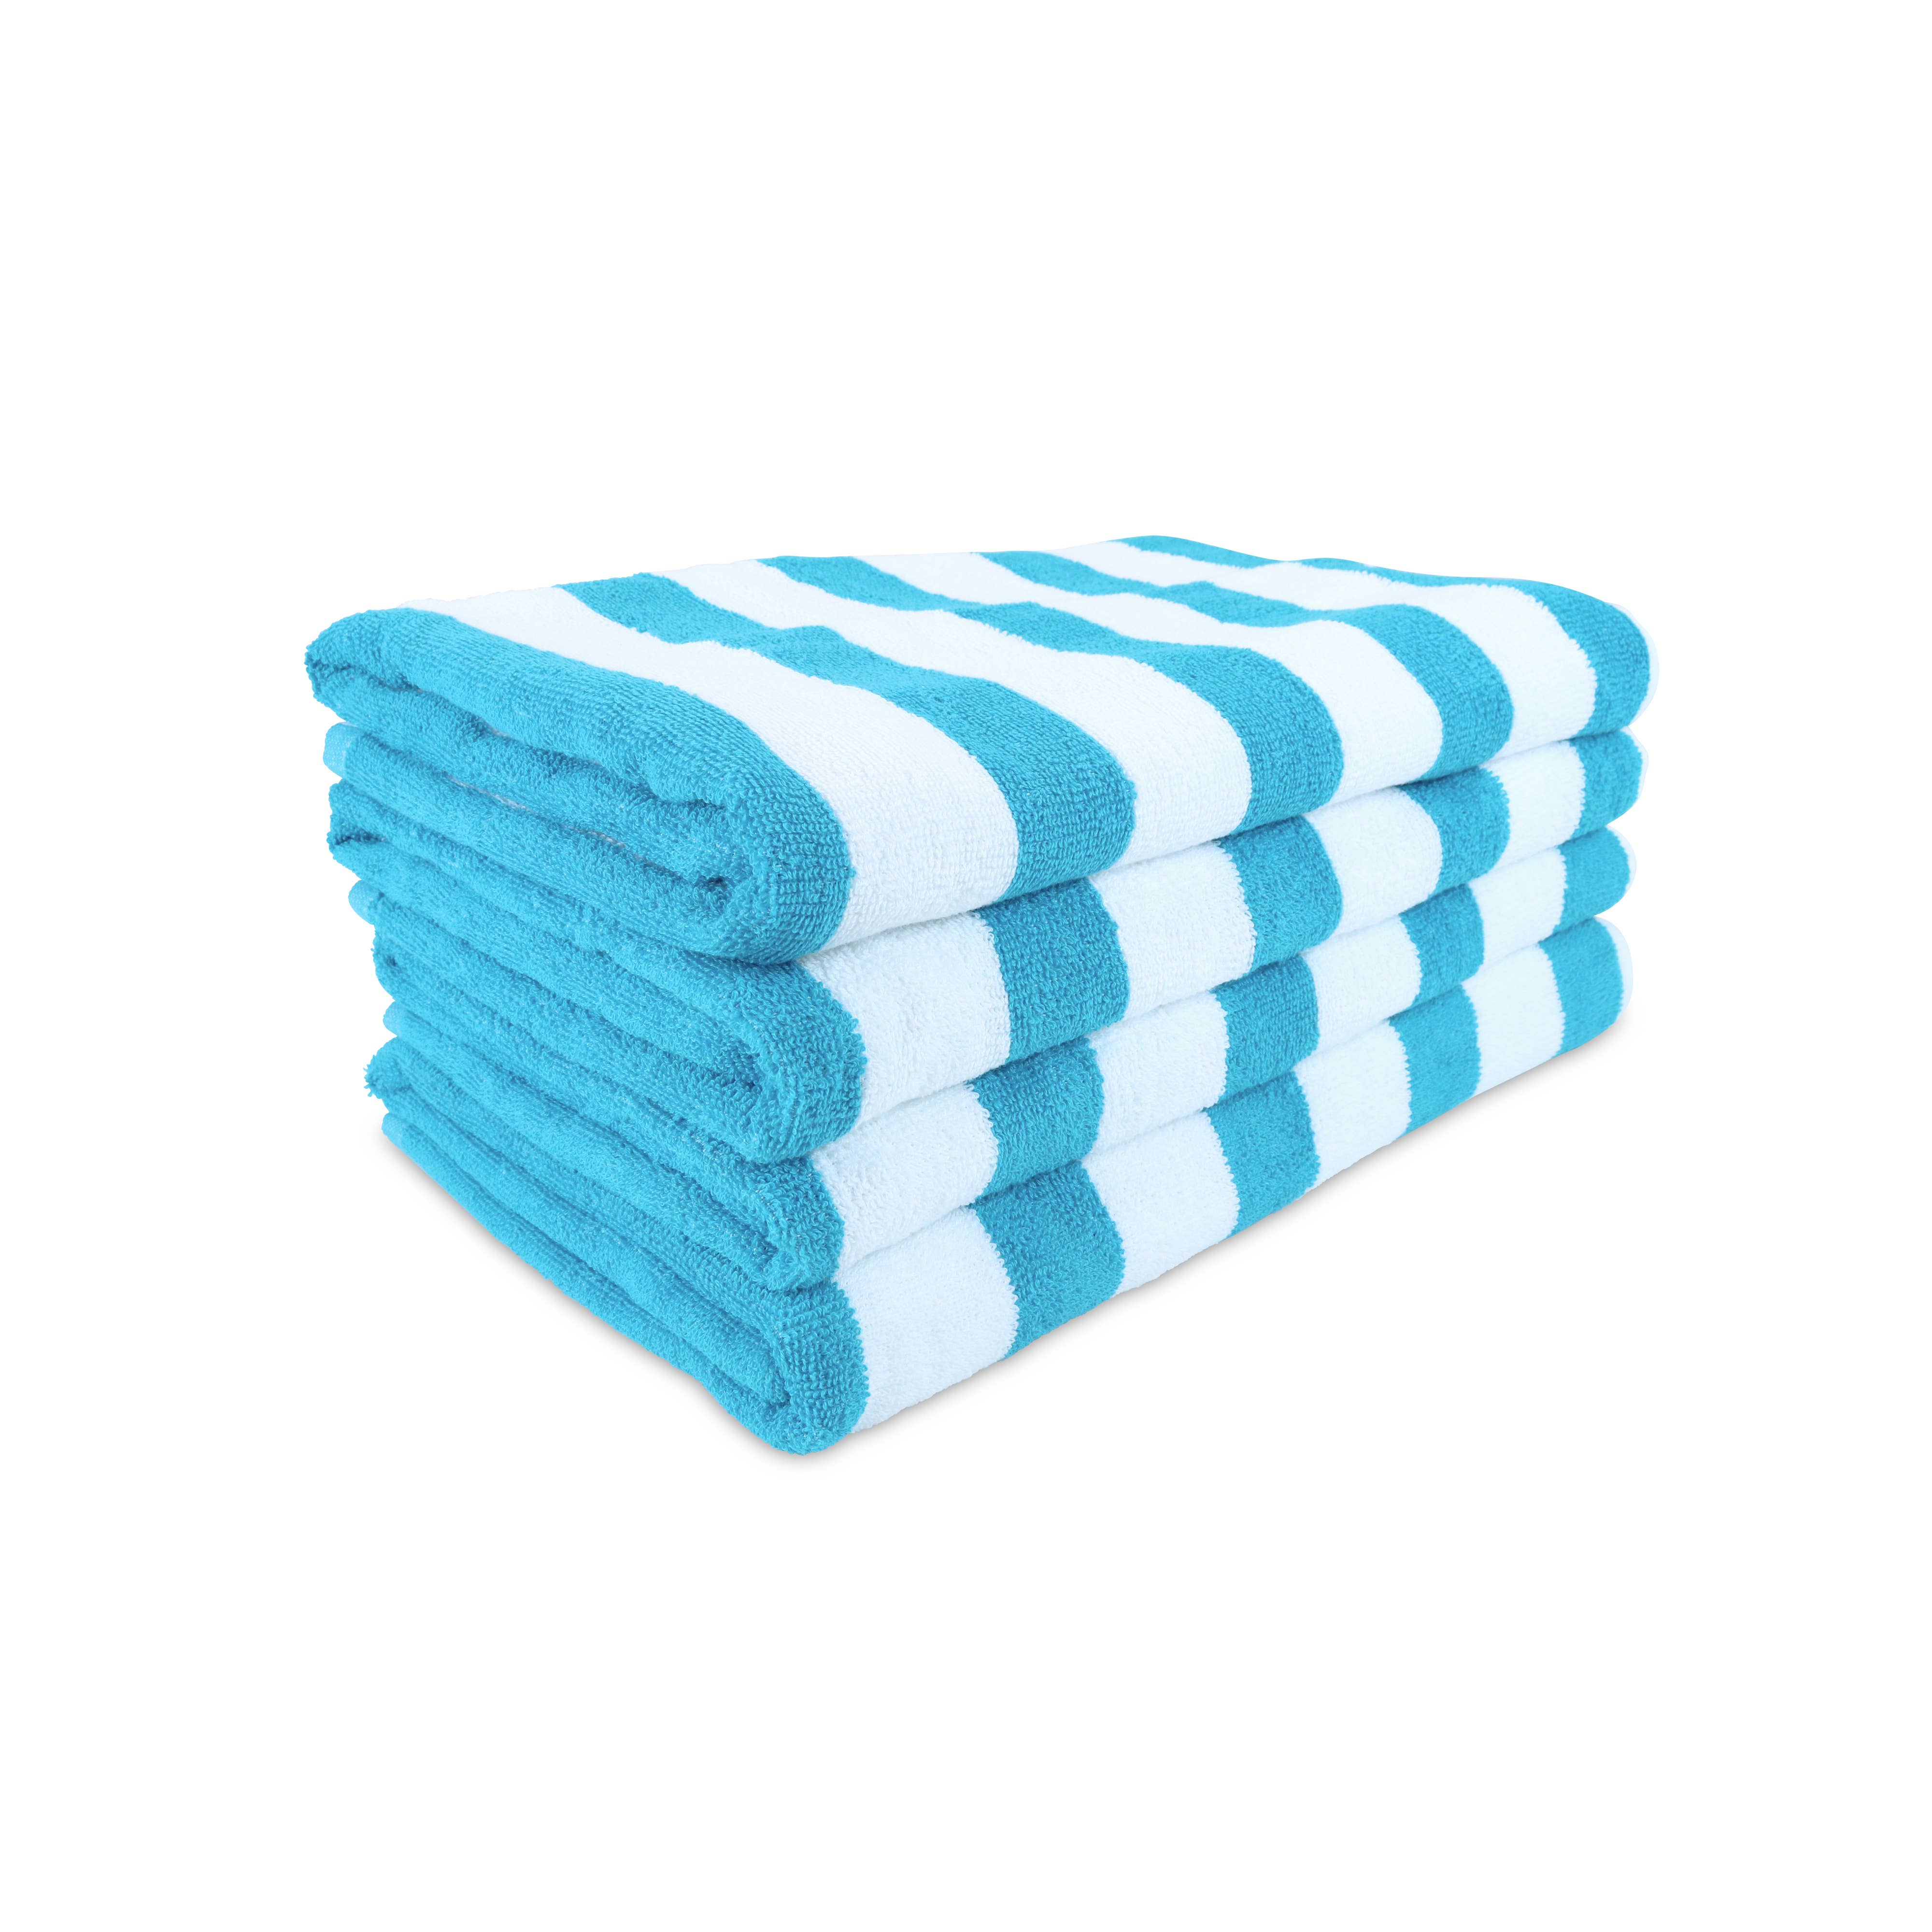 Seahorse Beach Bath Towel 30x60 Velour 100% Cotton 